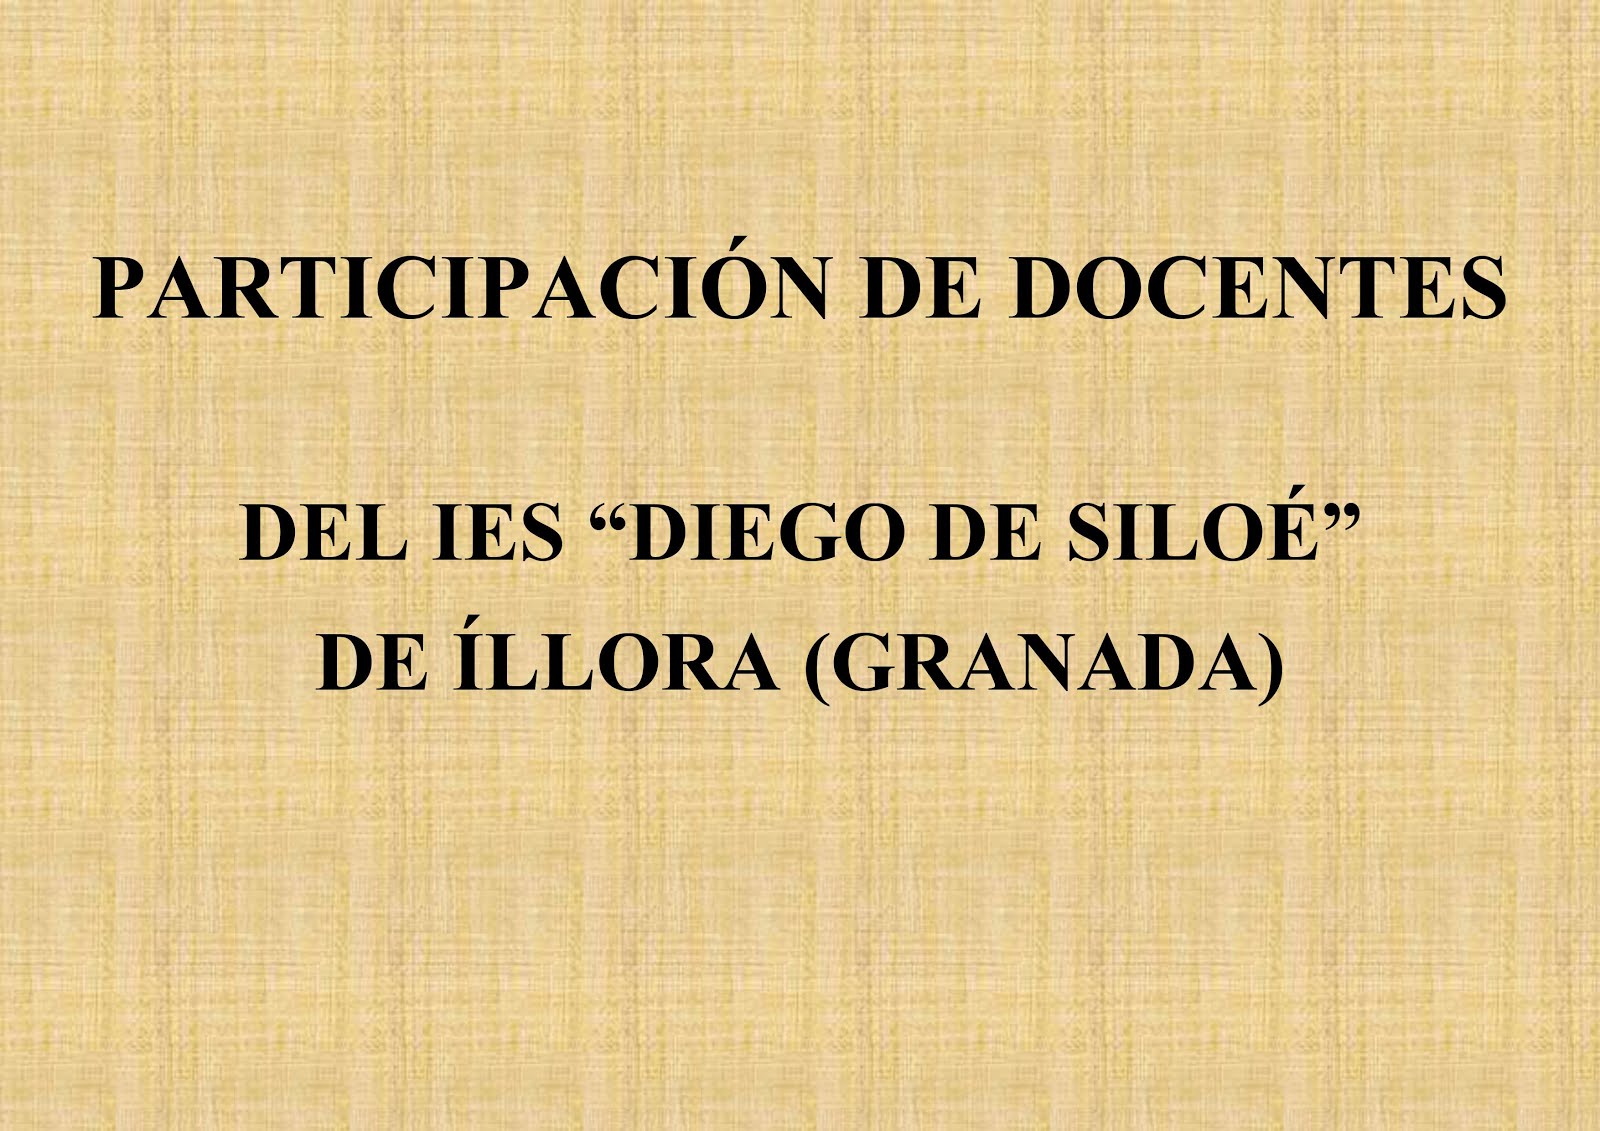 Montaje docentes IES "Diego de Siloé"